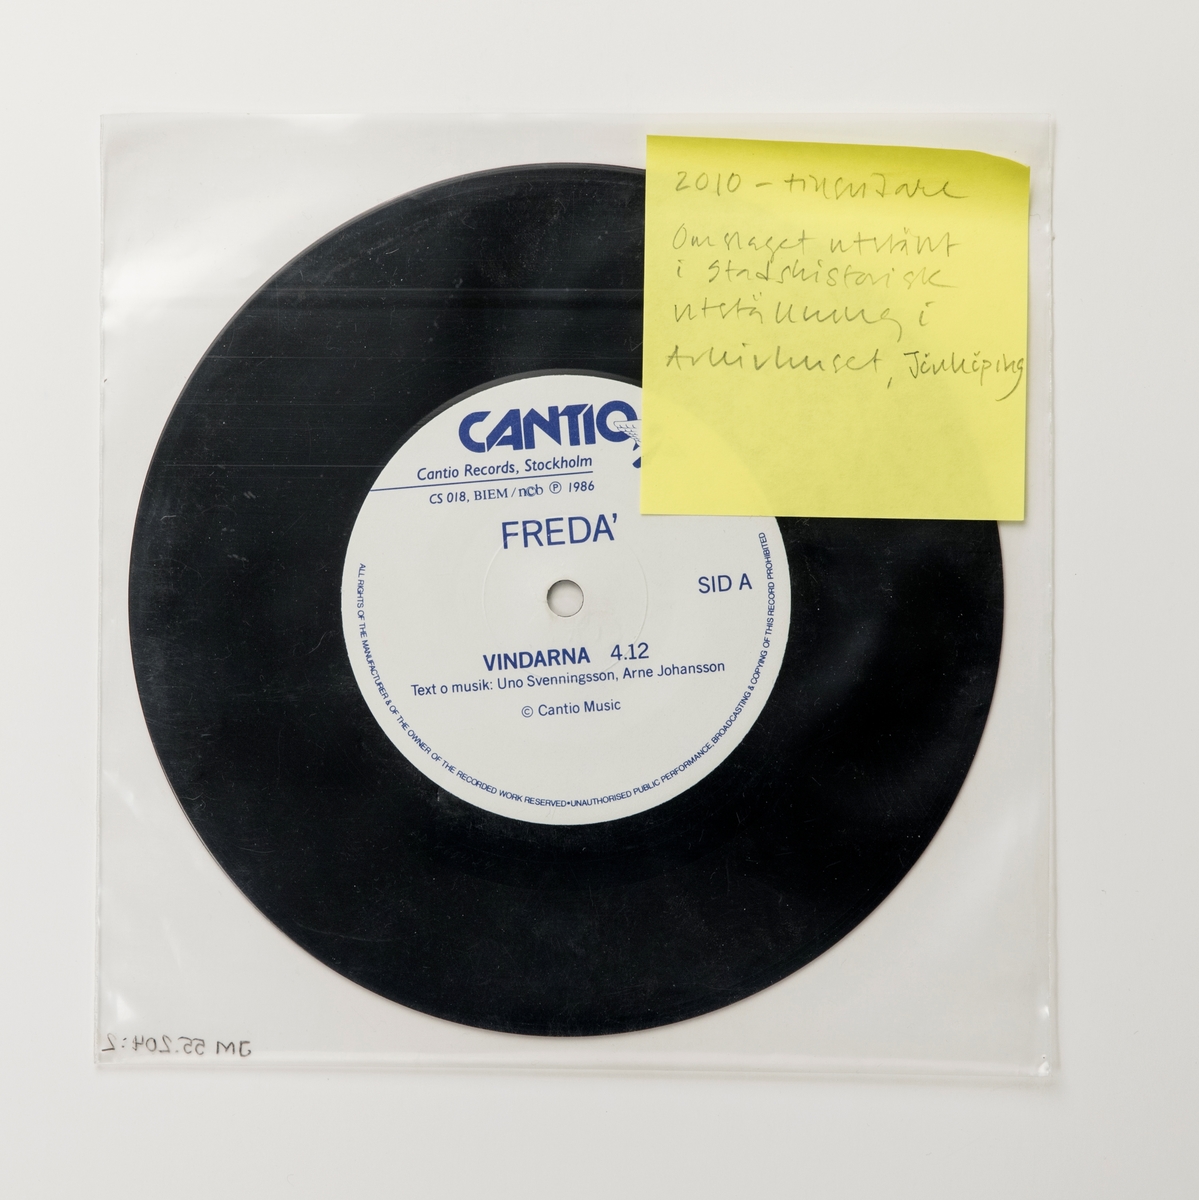 Singel-skiva av svart vinyl med vit pappersetikett, i omslag av papper, i plastficka.

Innehåll
Sid A: Vindarna
Sid B: I sanningens magi

JM 55204:1, Skiva
JM 55204:2, Plastficka